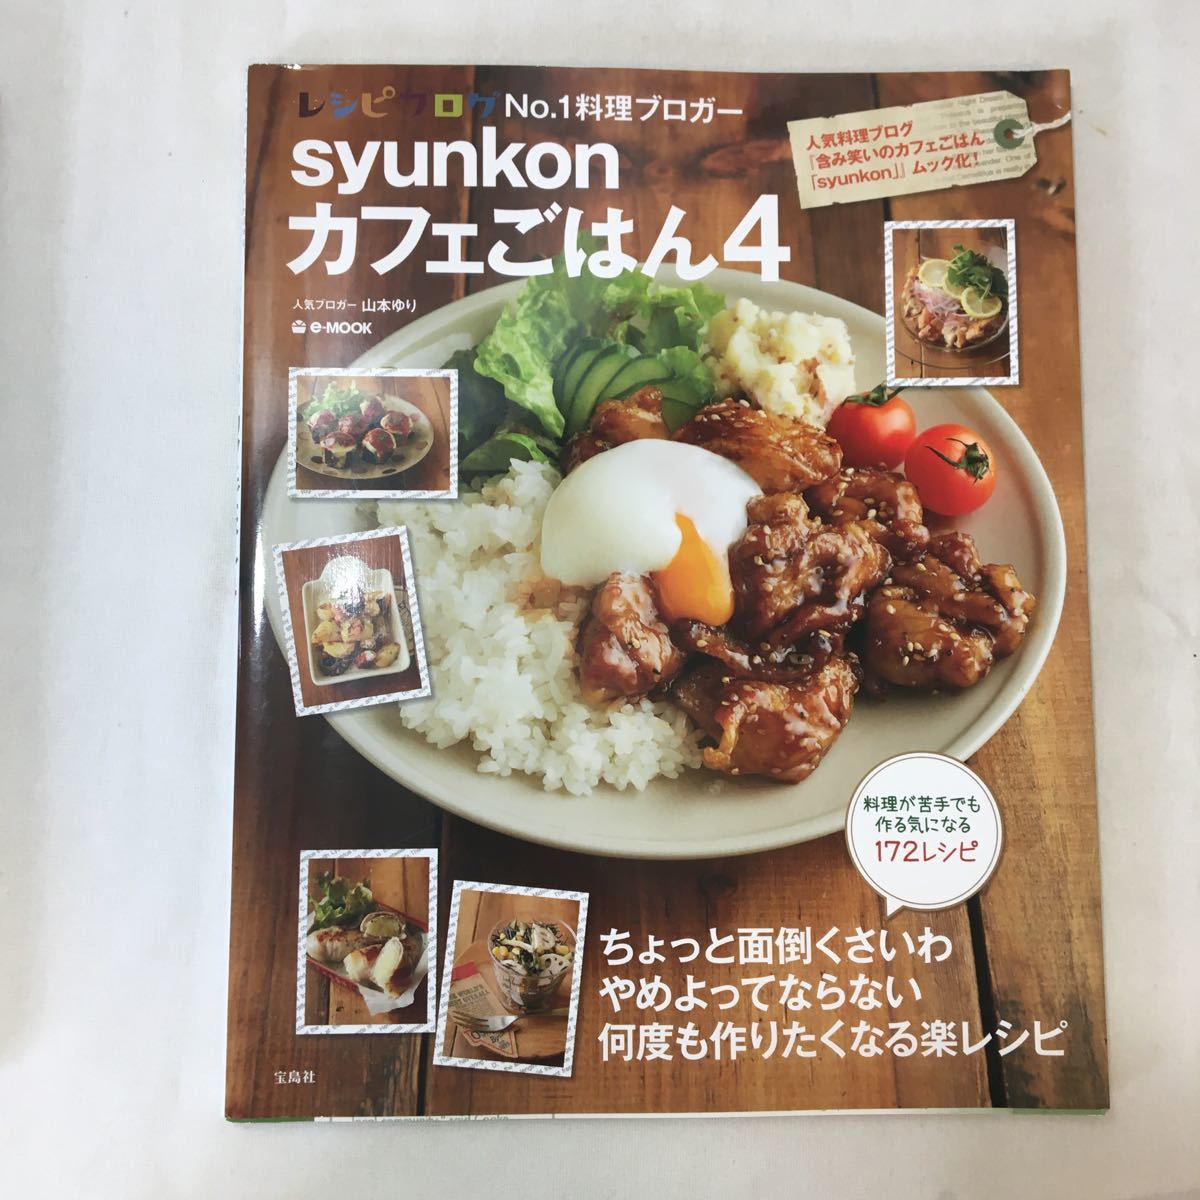 zaa-354!syunkon Cafe . is .2+3+4(e-MOOK) Yamamoto ..( work )3 pcs. set 